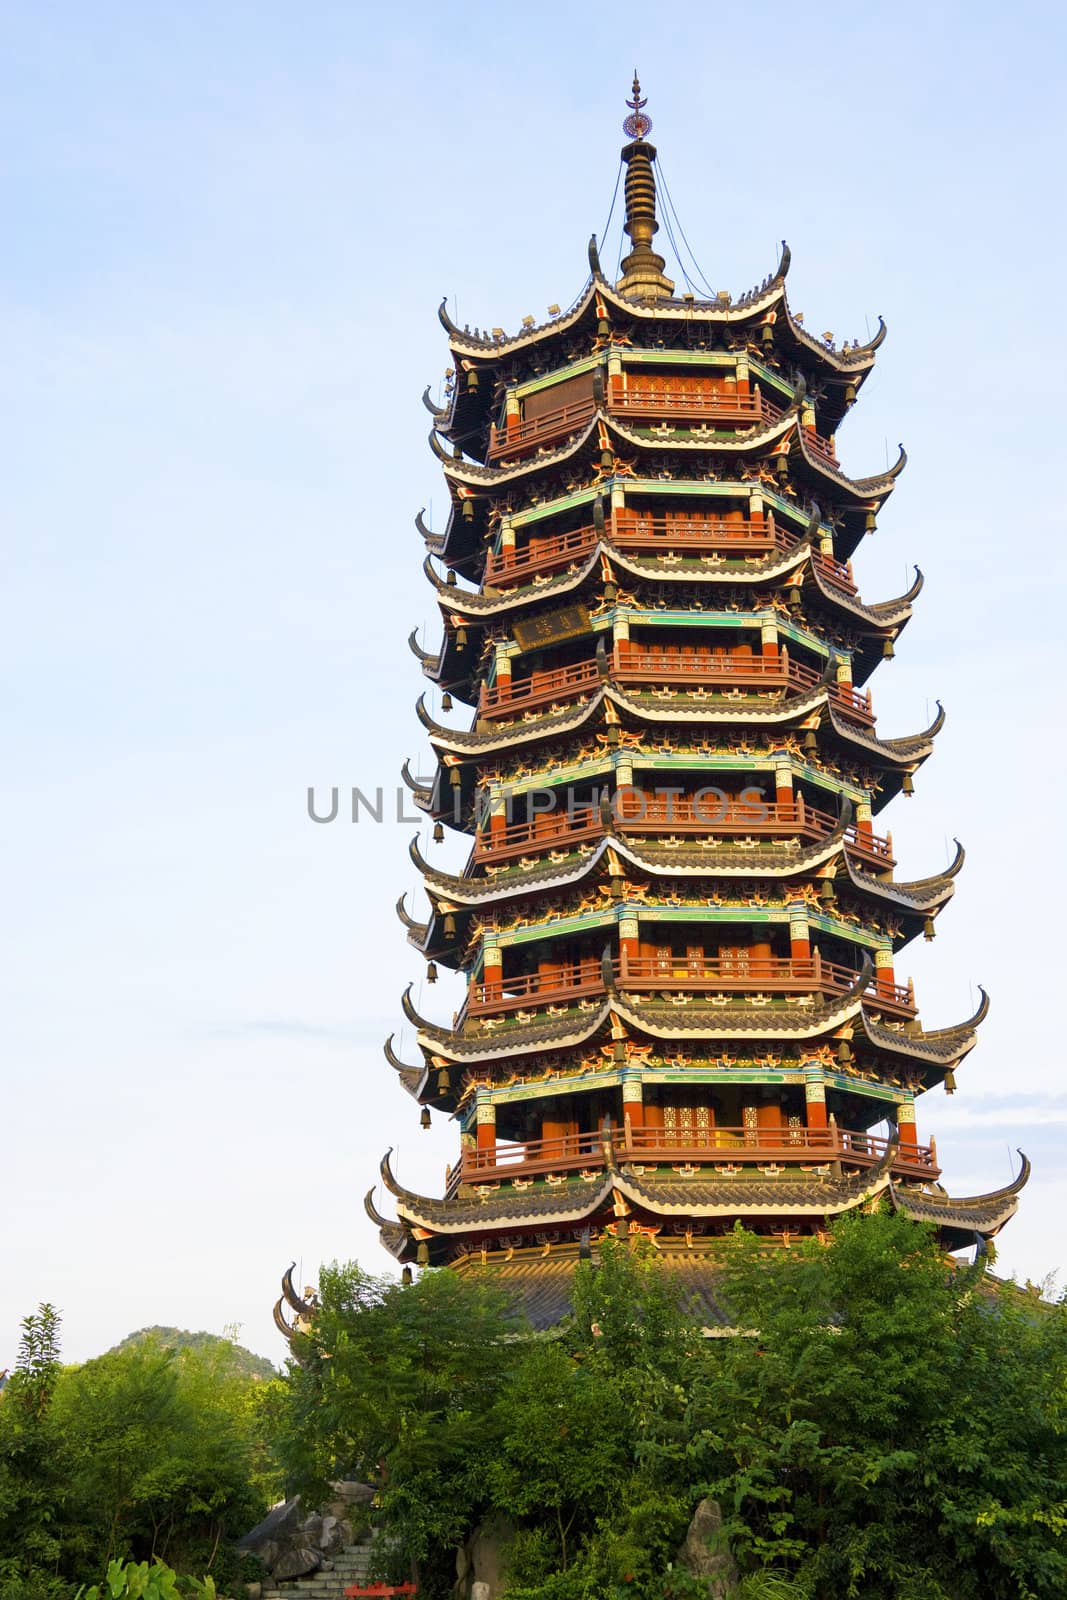 Moon Pagoda, Guilin, China by shariffc